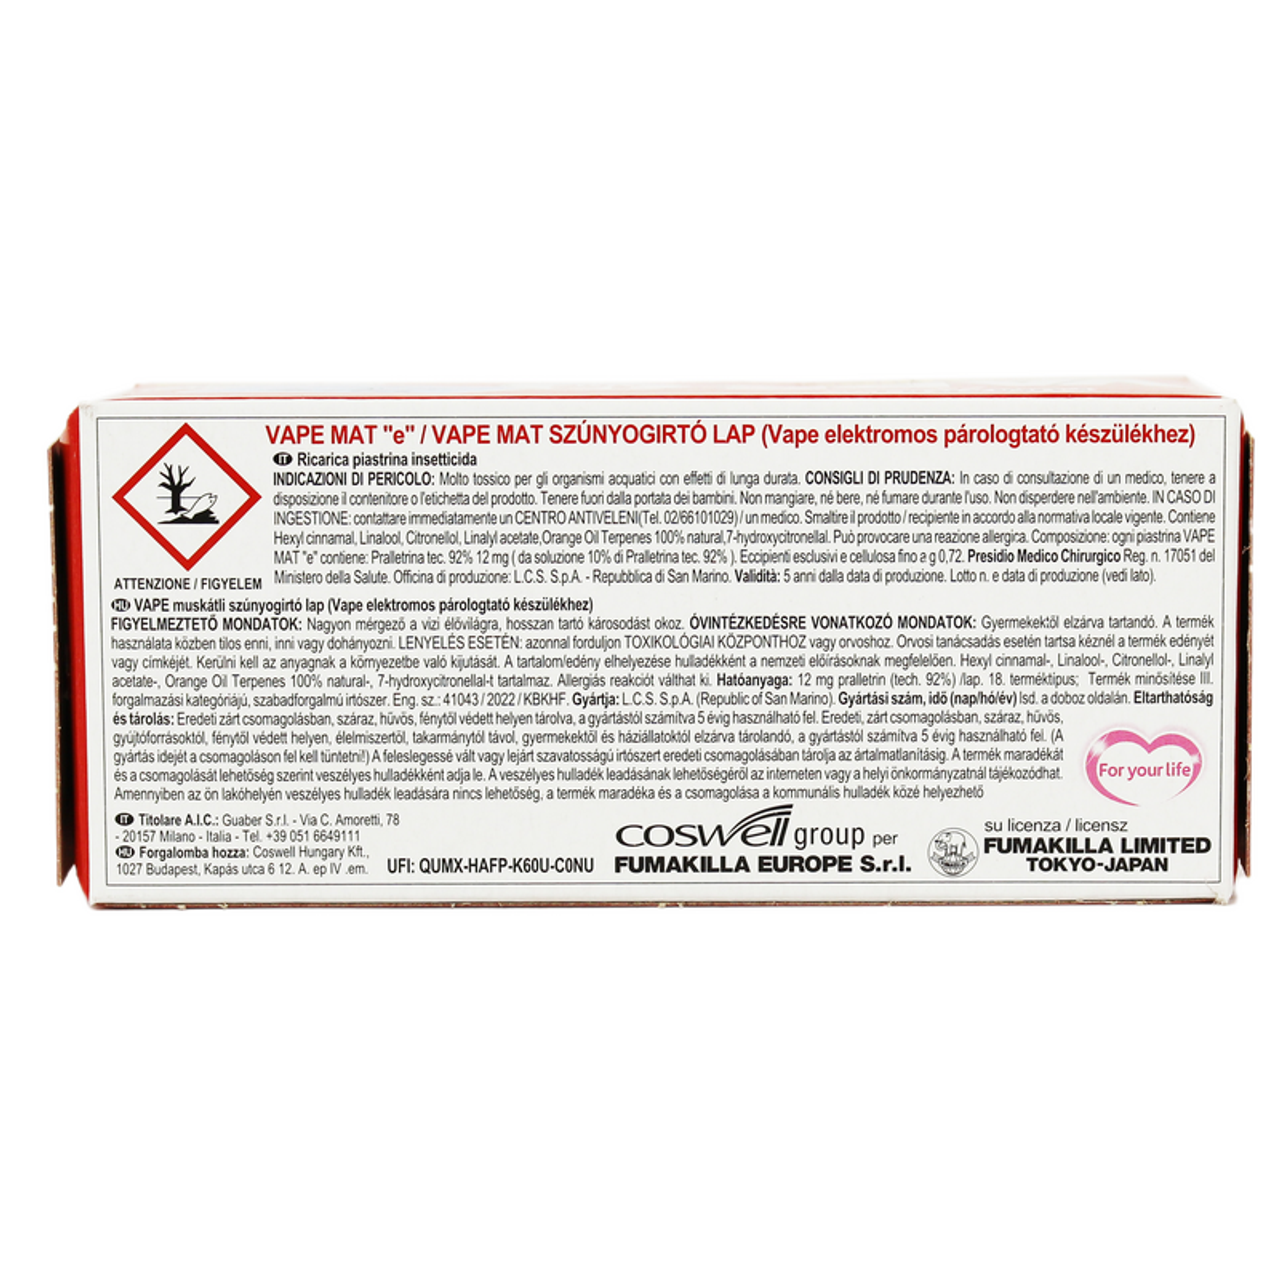 Insecticide Vape Classic Anti -Zanzara platelet 30 pcs